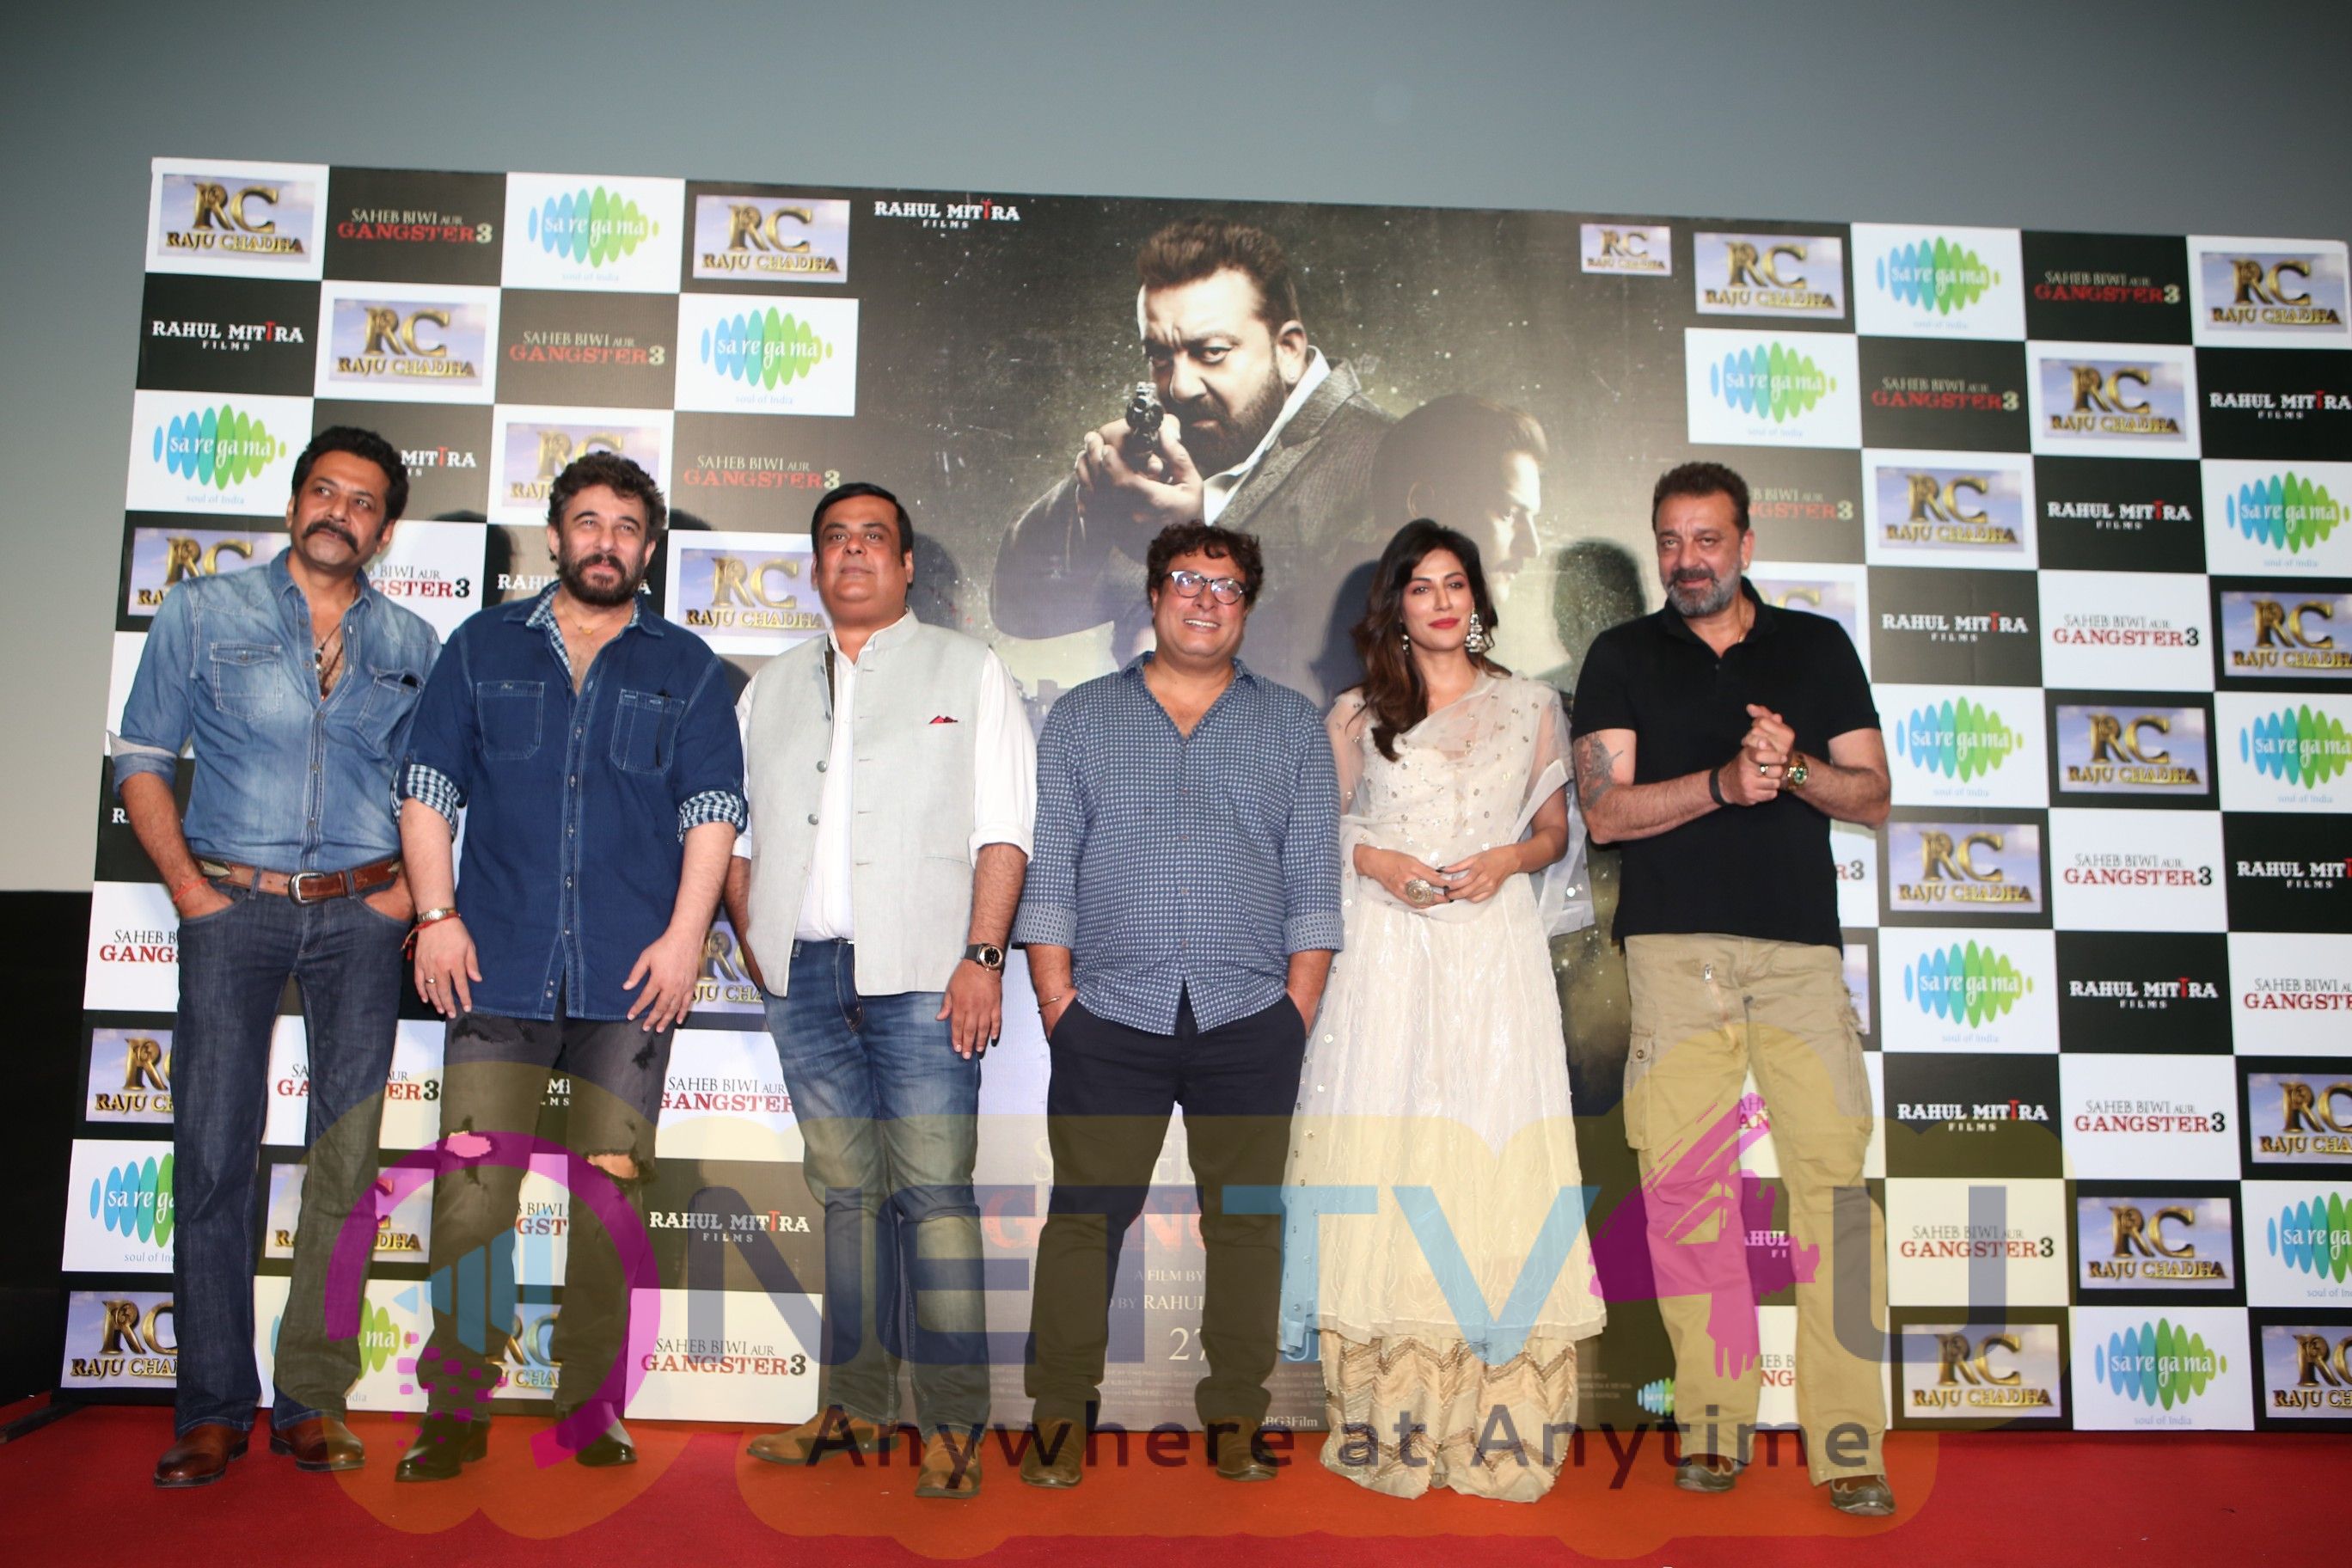 Trailer Launch Of Film Saheb Biwi Aur Gangster 3 Stills Hindi Gallery